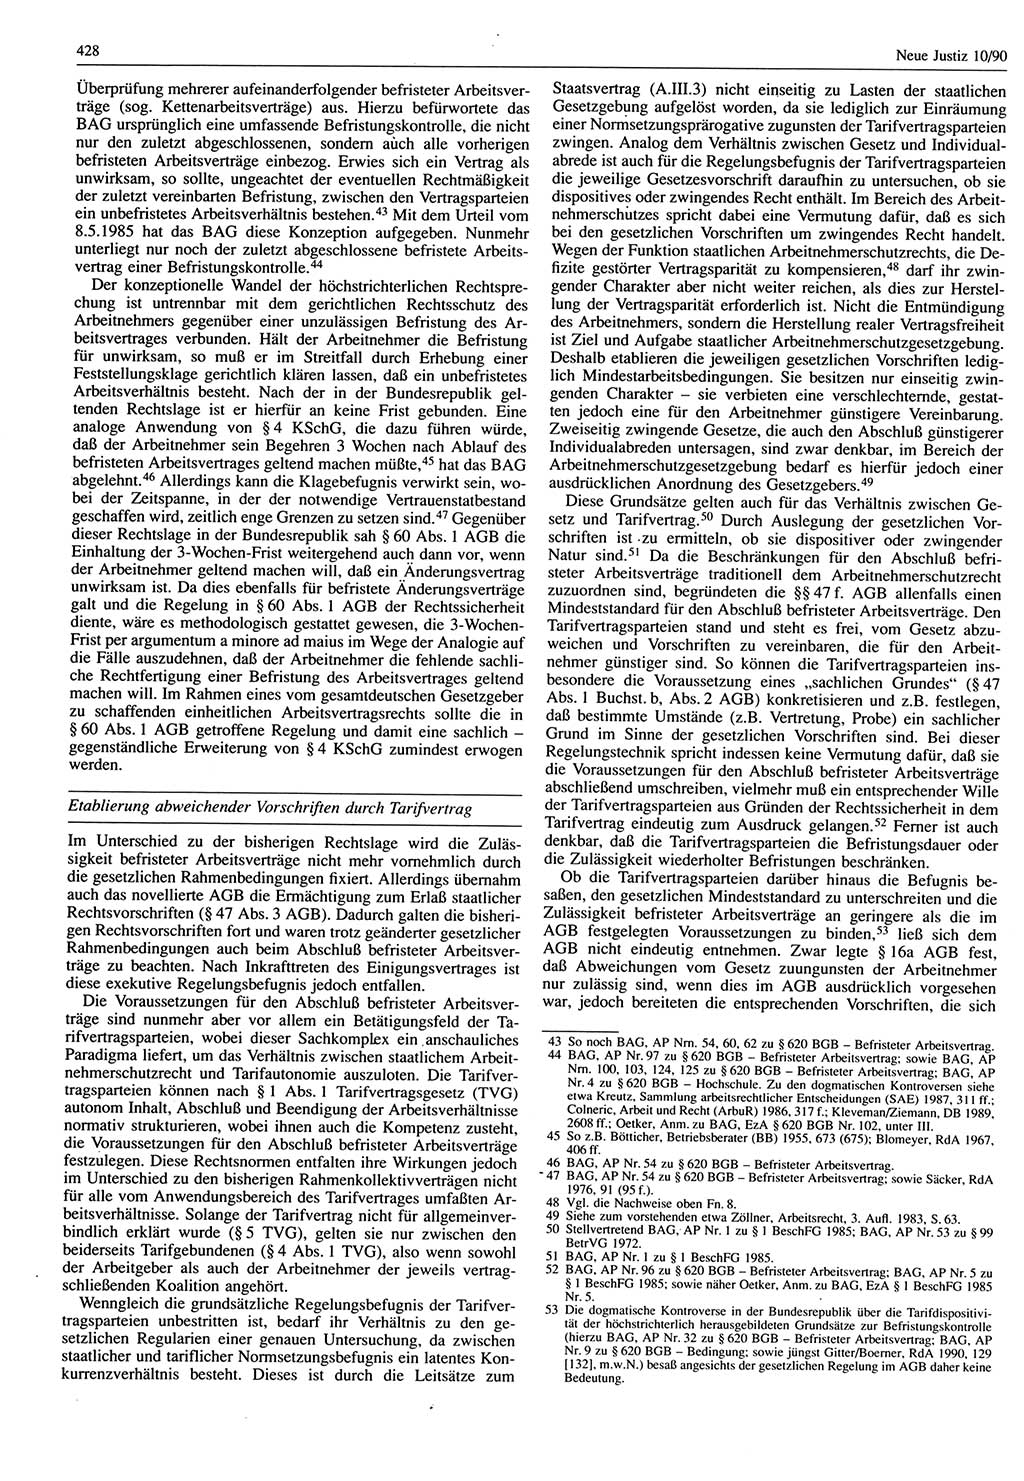 Neue Justiz (NJ), Zeitschrift für Rechtsetzung und Rechtsanwendung [Deutsche Demokratische Republik (DDR)], 44. Jahrgang 1990, Seite 428 (NJ DDR 1990, S. 428)